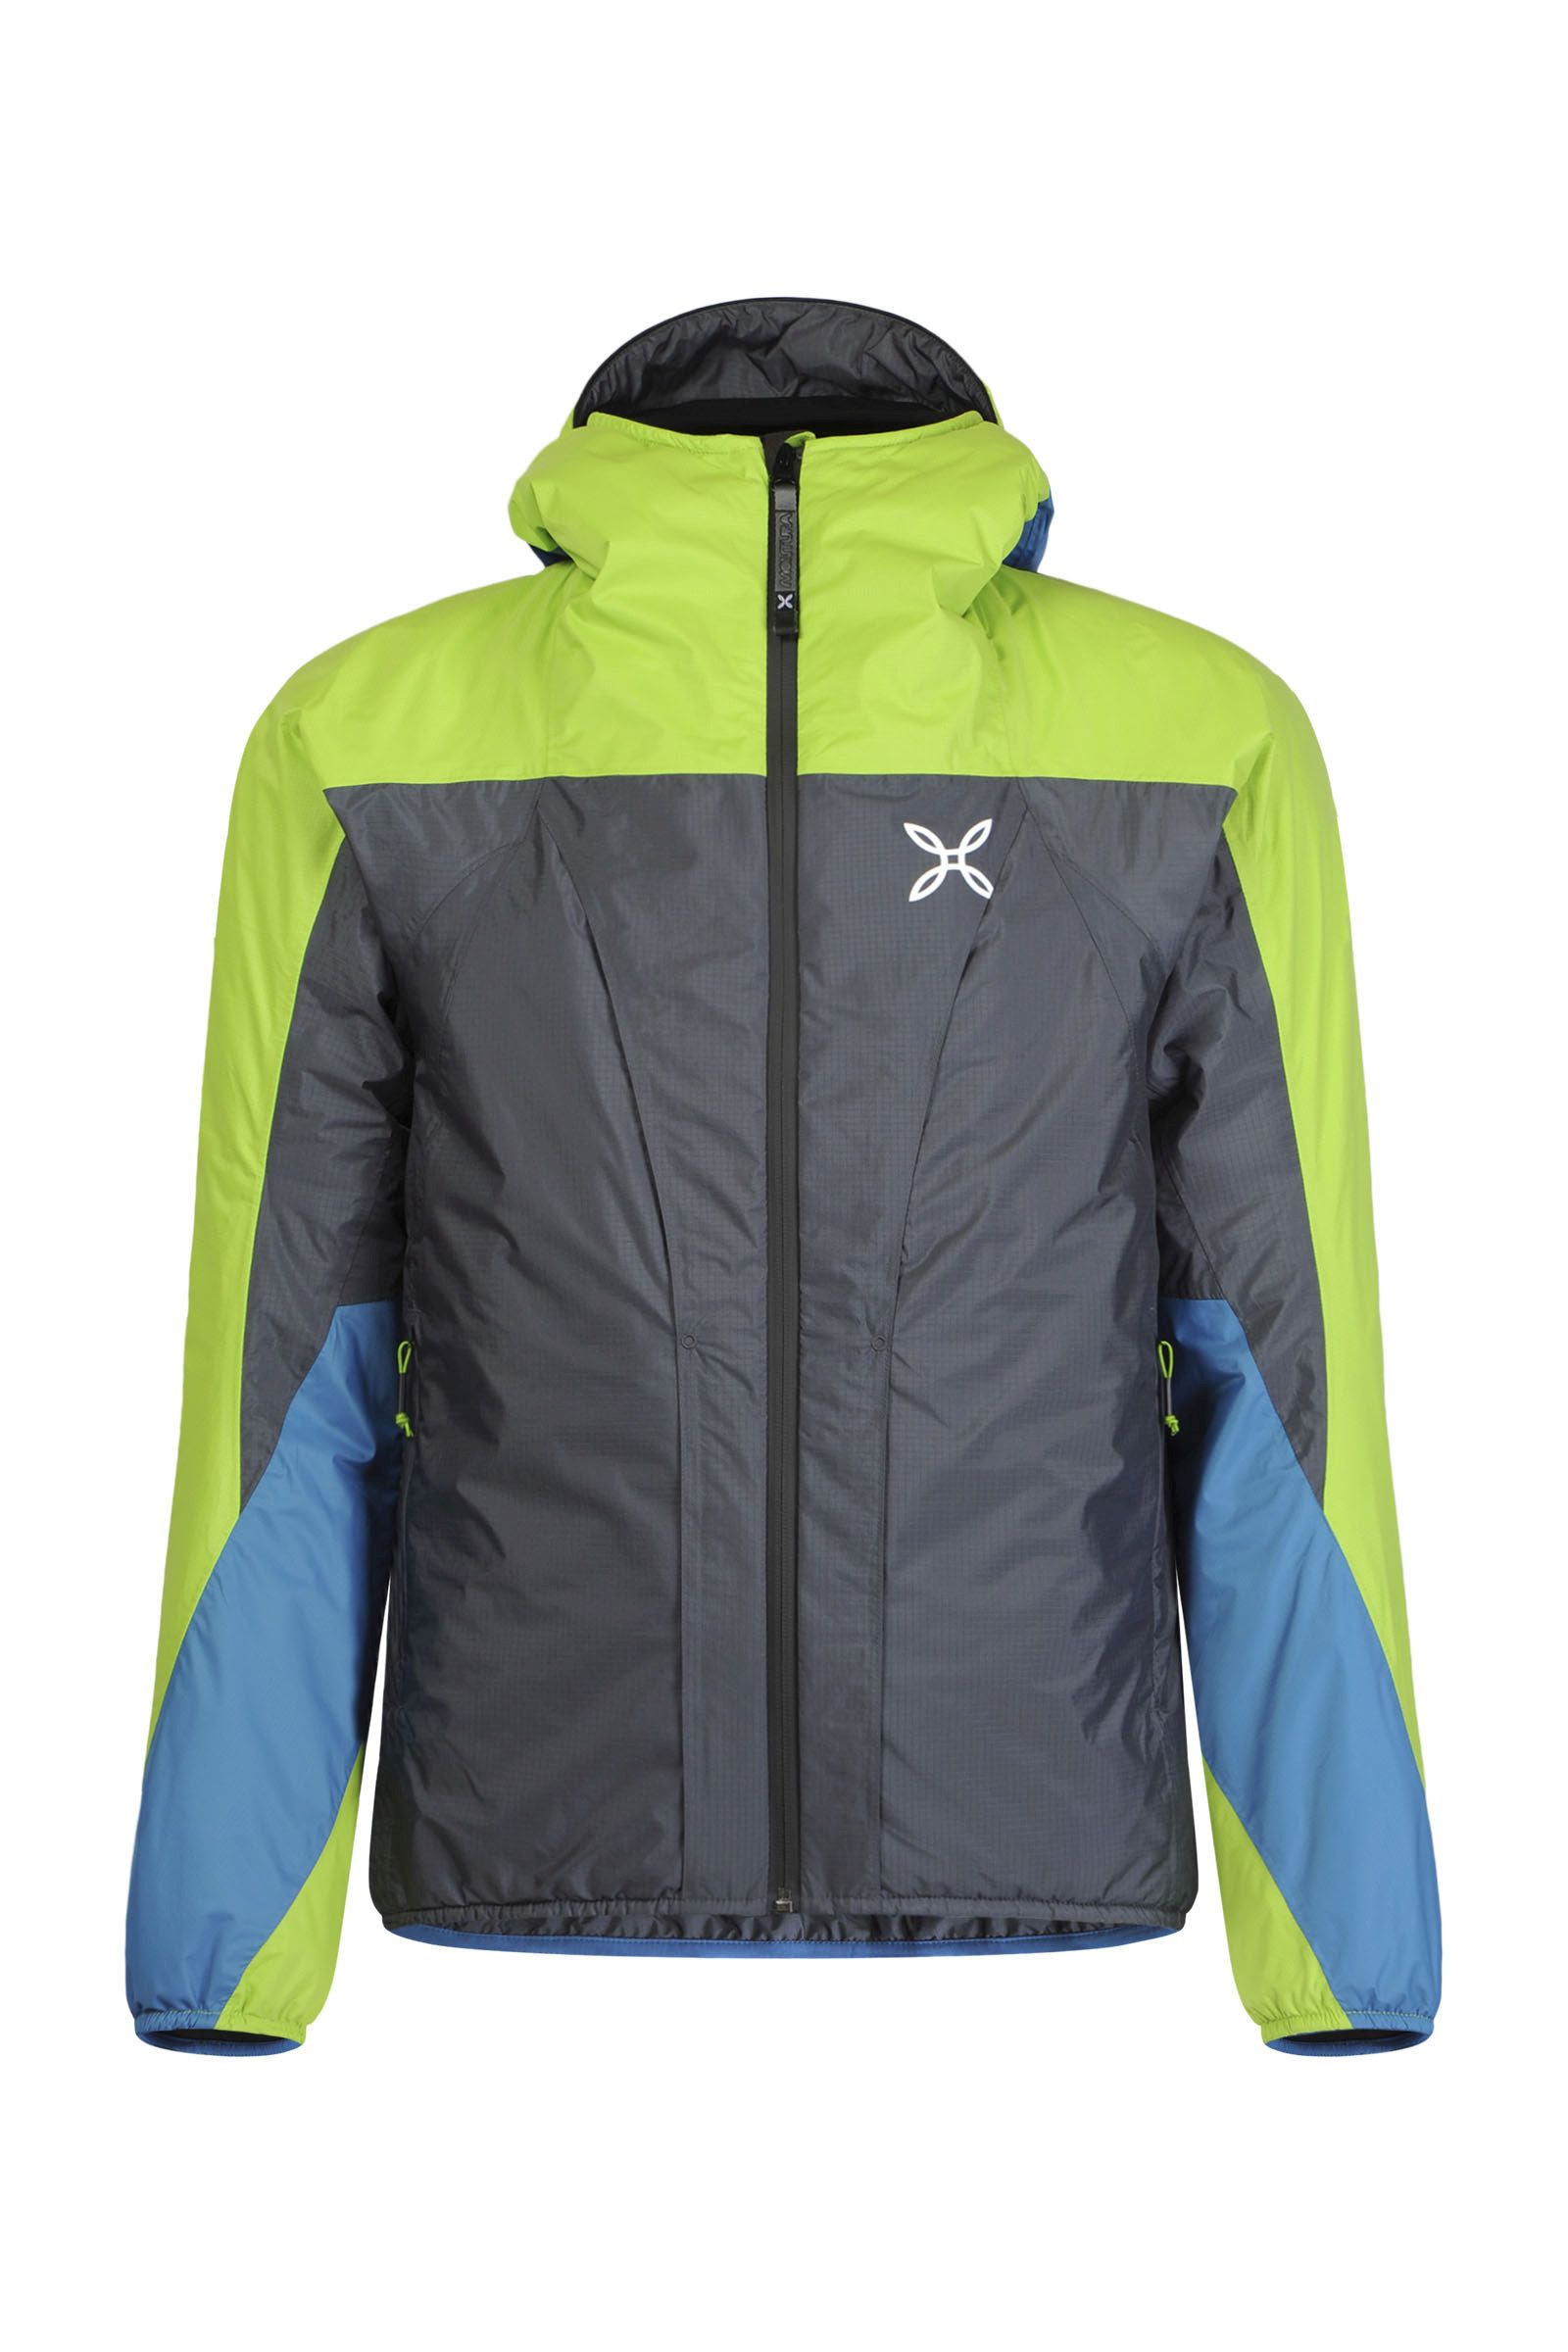 MONTURA Trident 2.0 Jacket Uomo MJAK90X 9047 Colore Nero Verde Lime Giacca Invernale Imbottita Ideale per attività Outdoor Come Trekking e Sci Alpinismo 